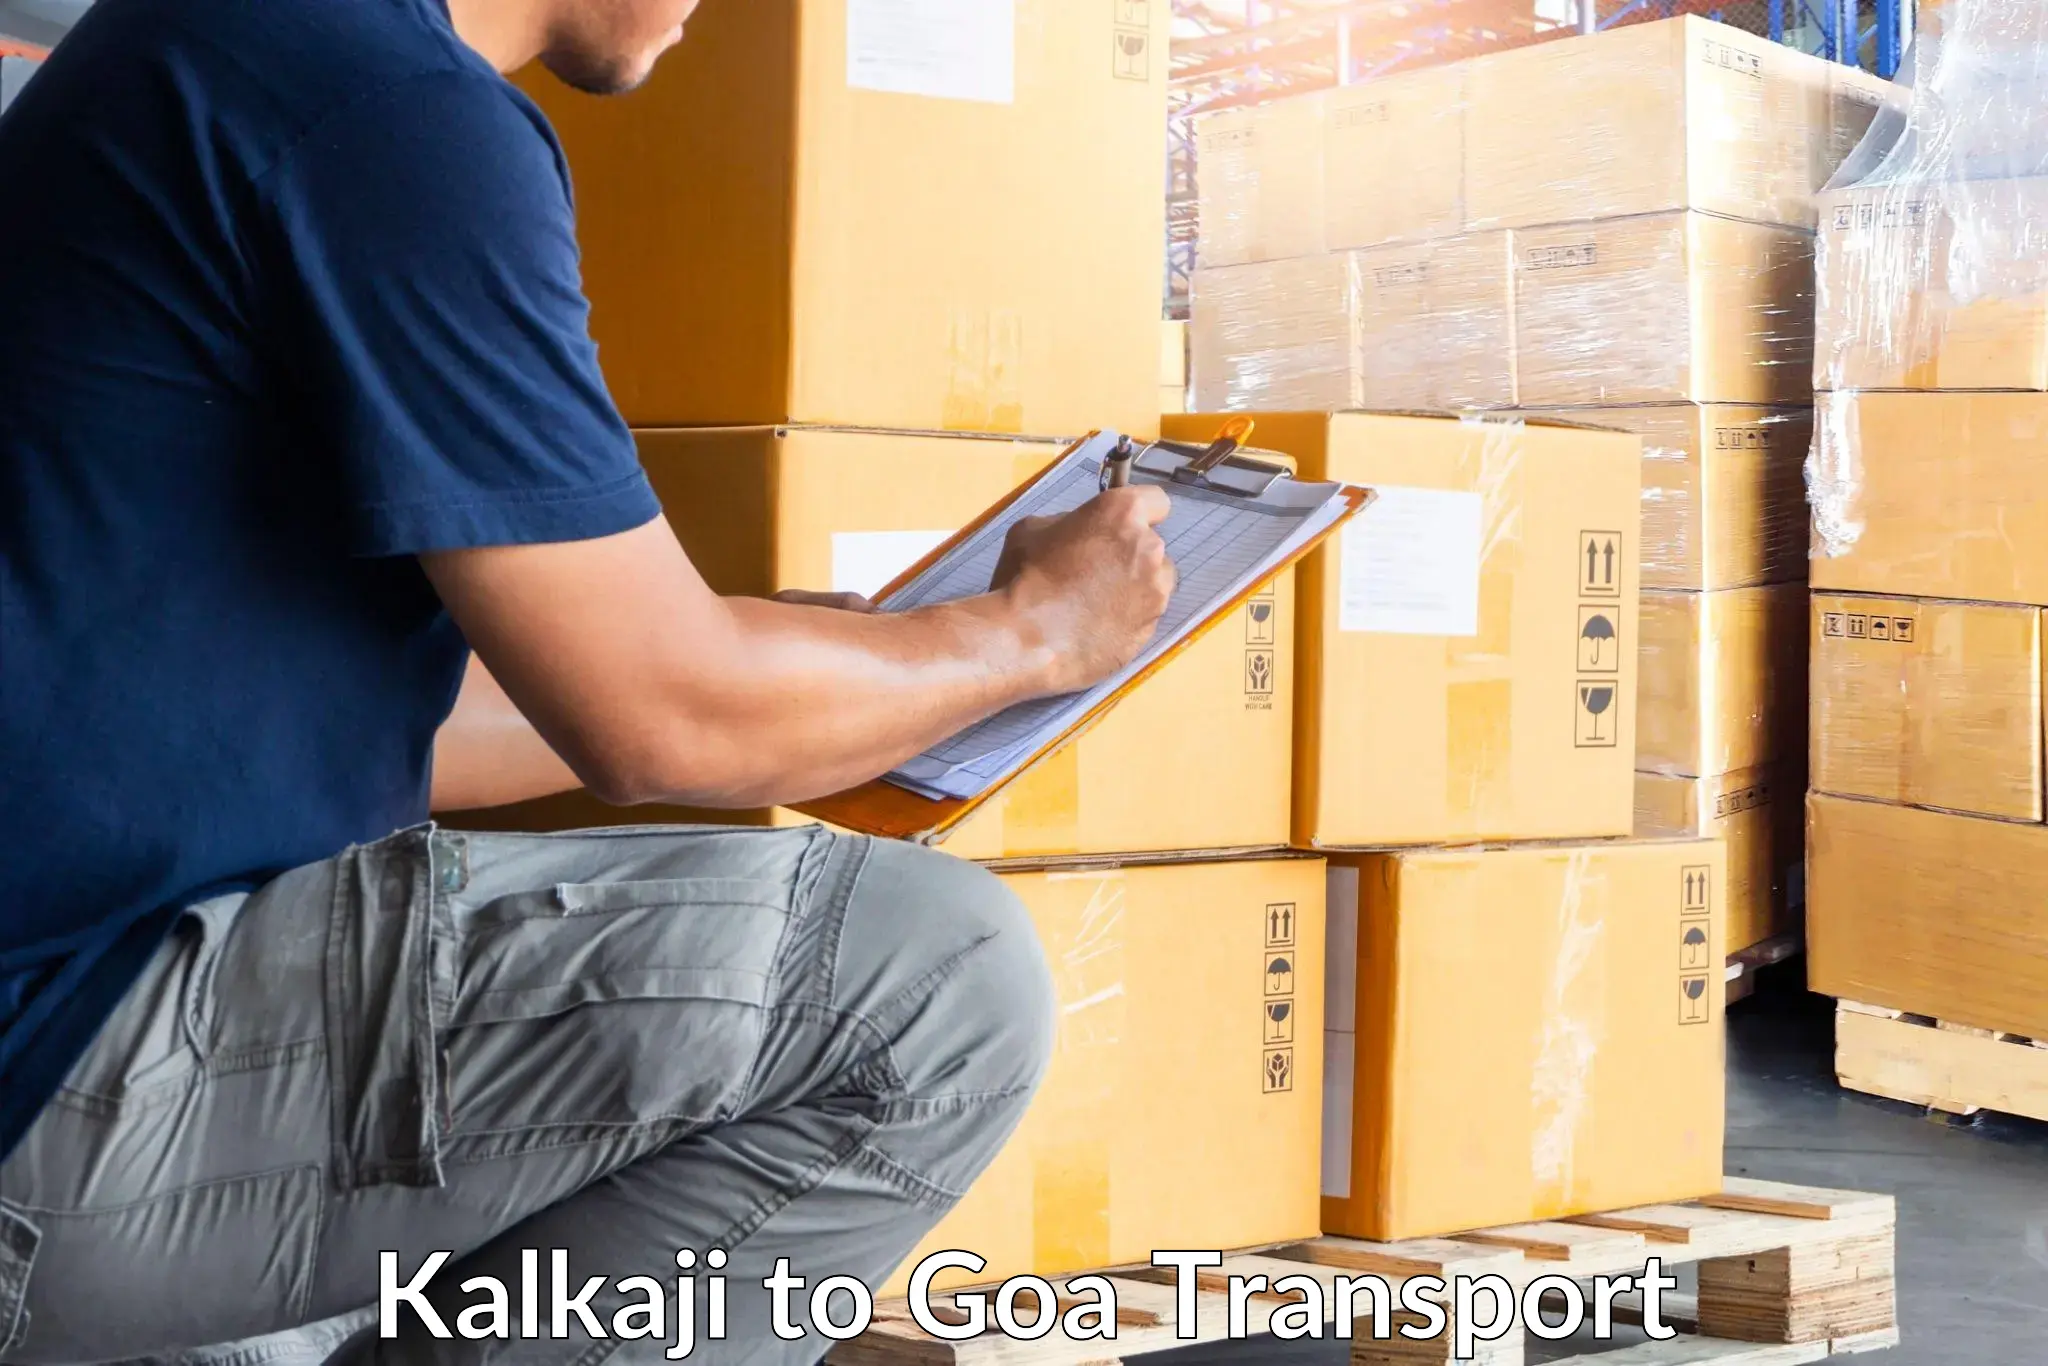 Vehicle transport services Kalkaji to IIT Goa